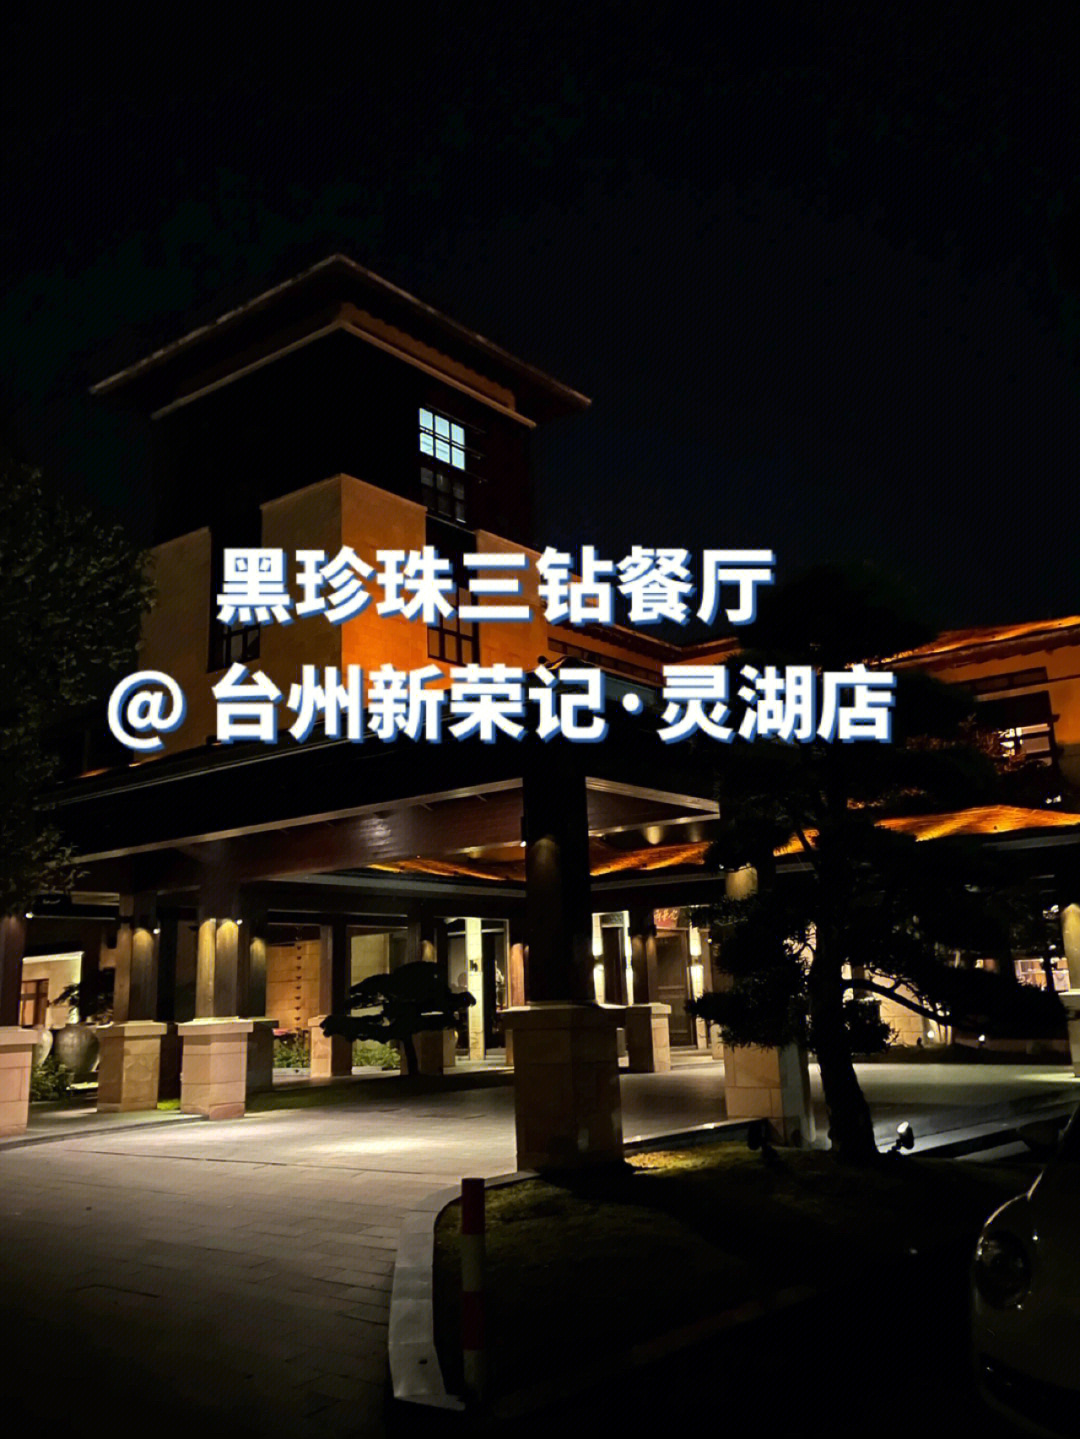 上海黑珍珠三钻餐厅图片